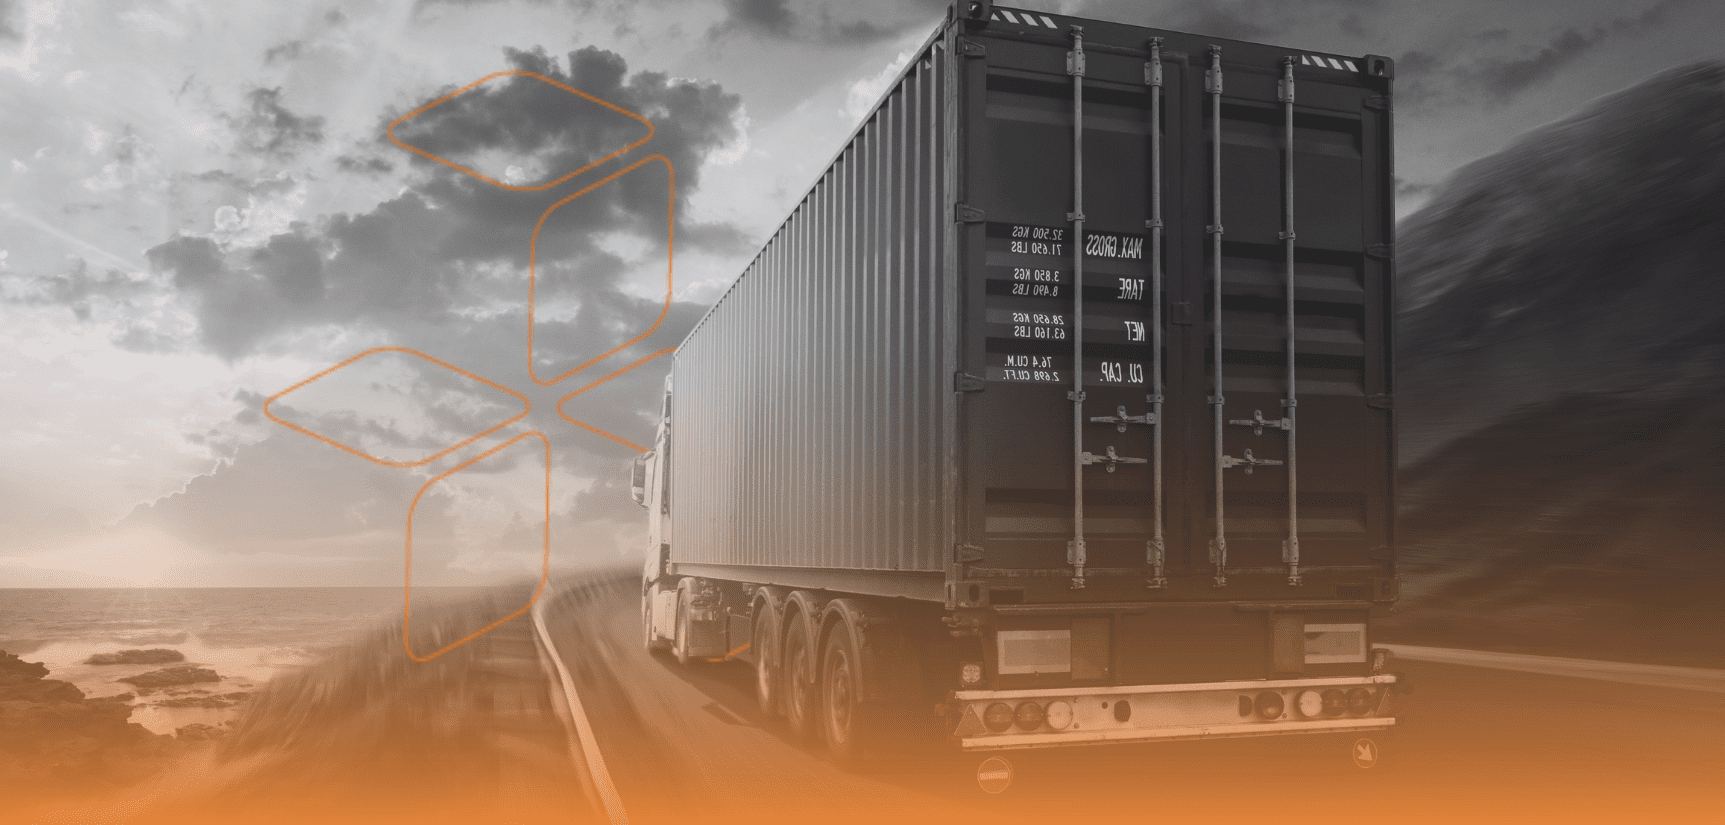 Segurança no transporte de carga: como reduzir sinistros e ganhar eficiência